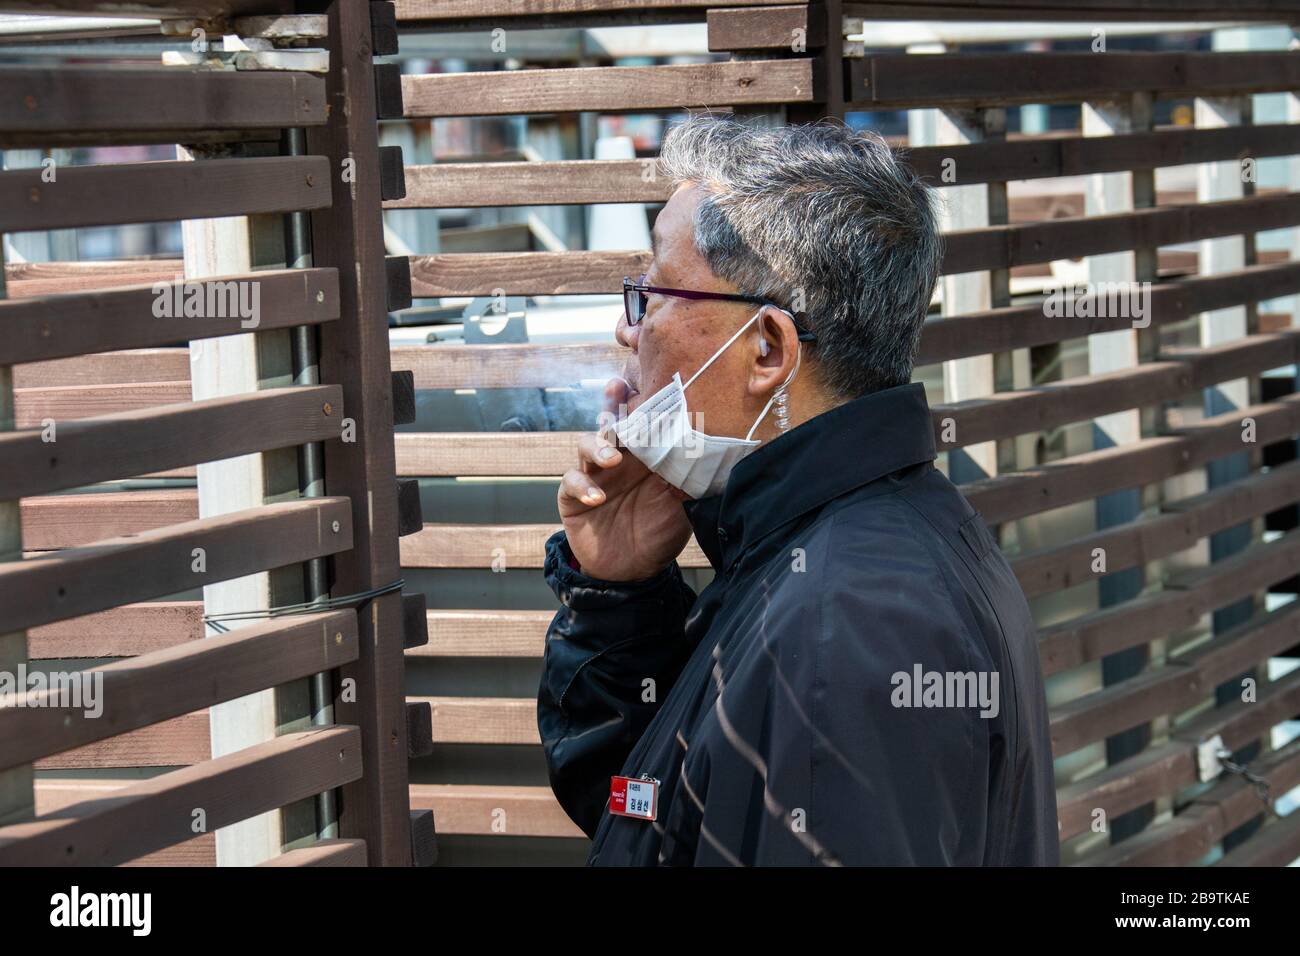 L'homme fume et porte un masque de protection lors de la pandémie de coronavirus à Séoul, en Corée du Sud Banque D'Images